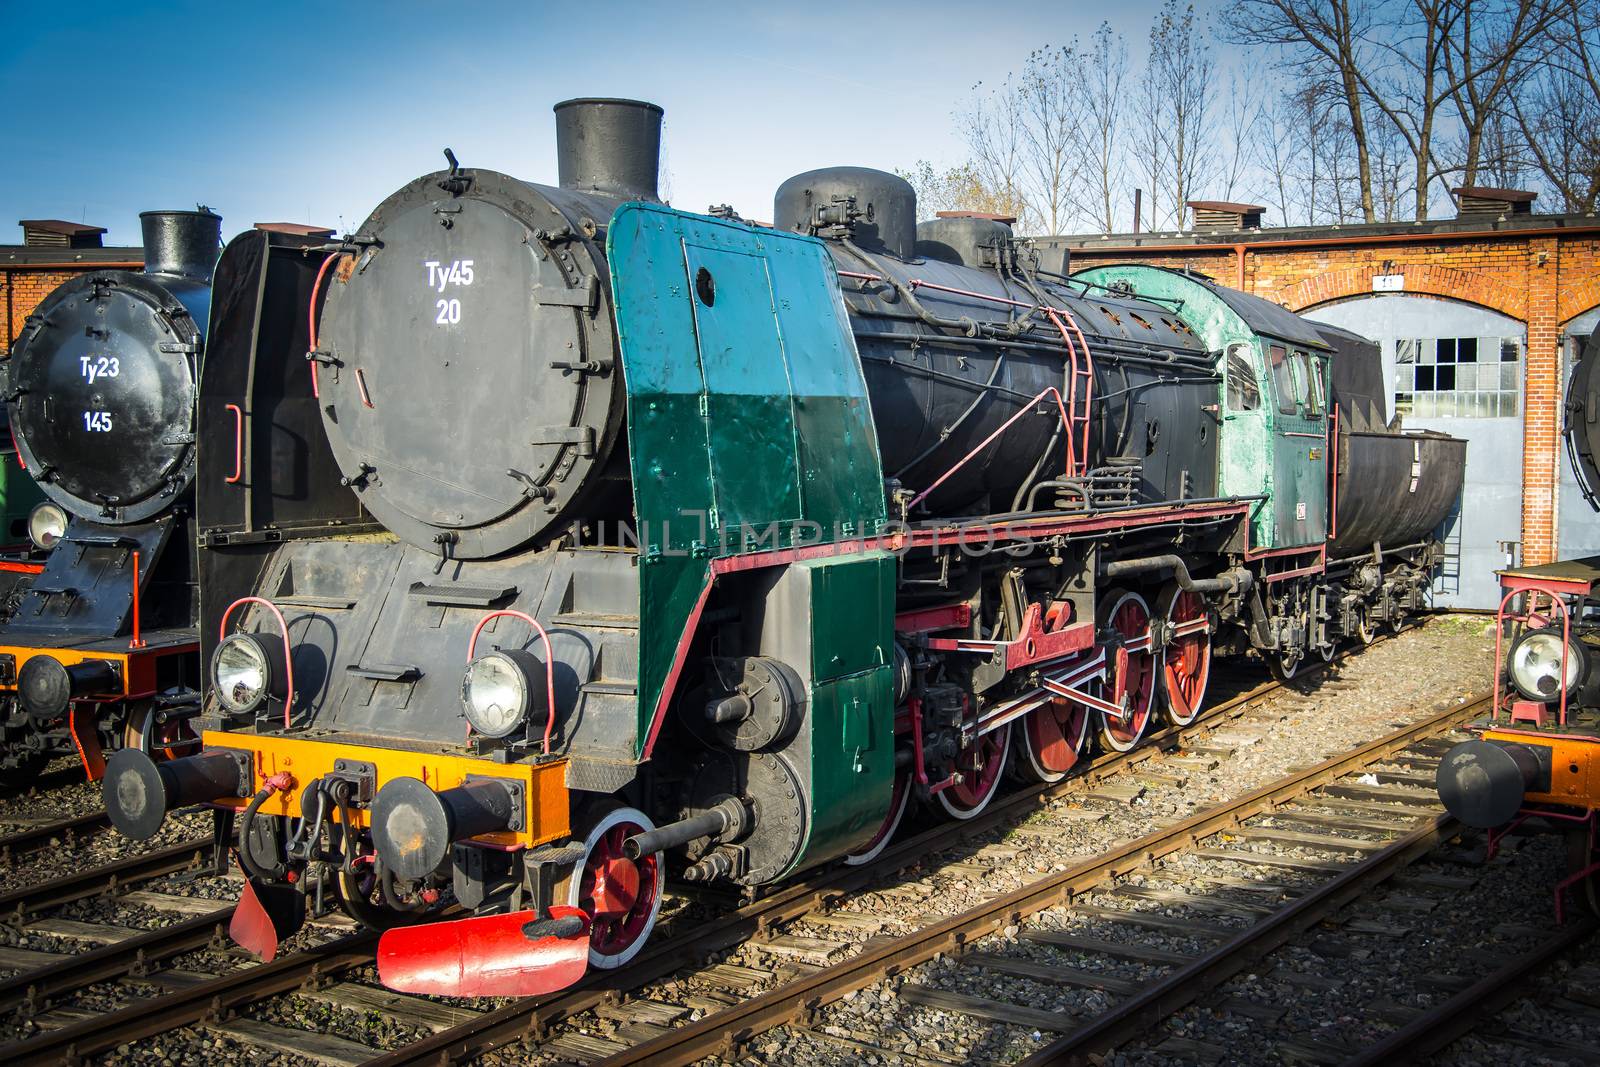 Old steam locomotive by furzyk73